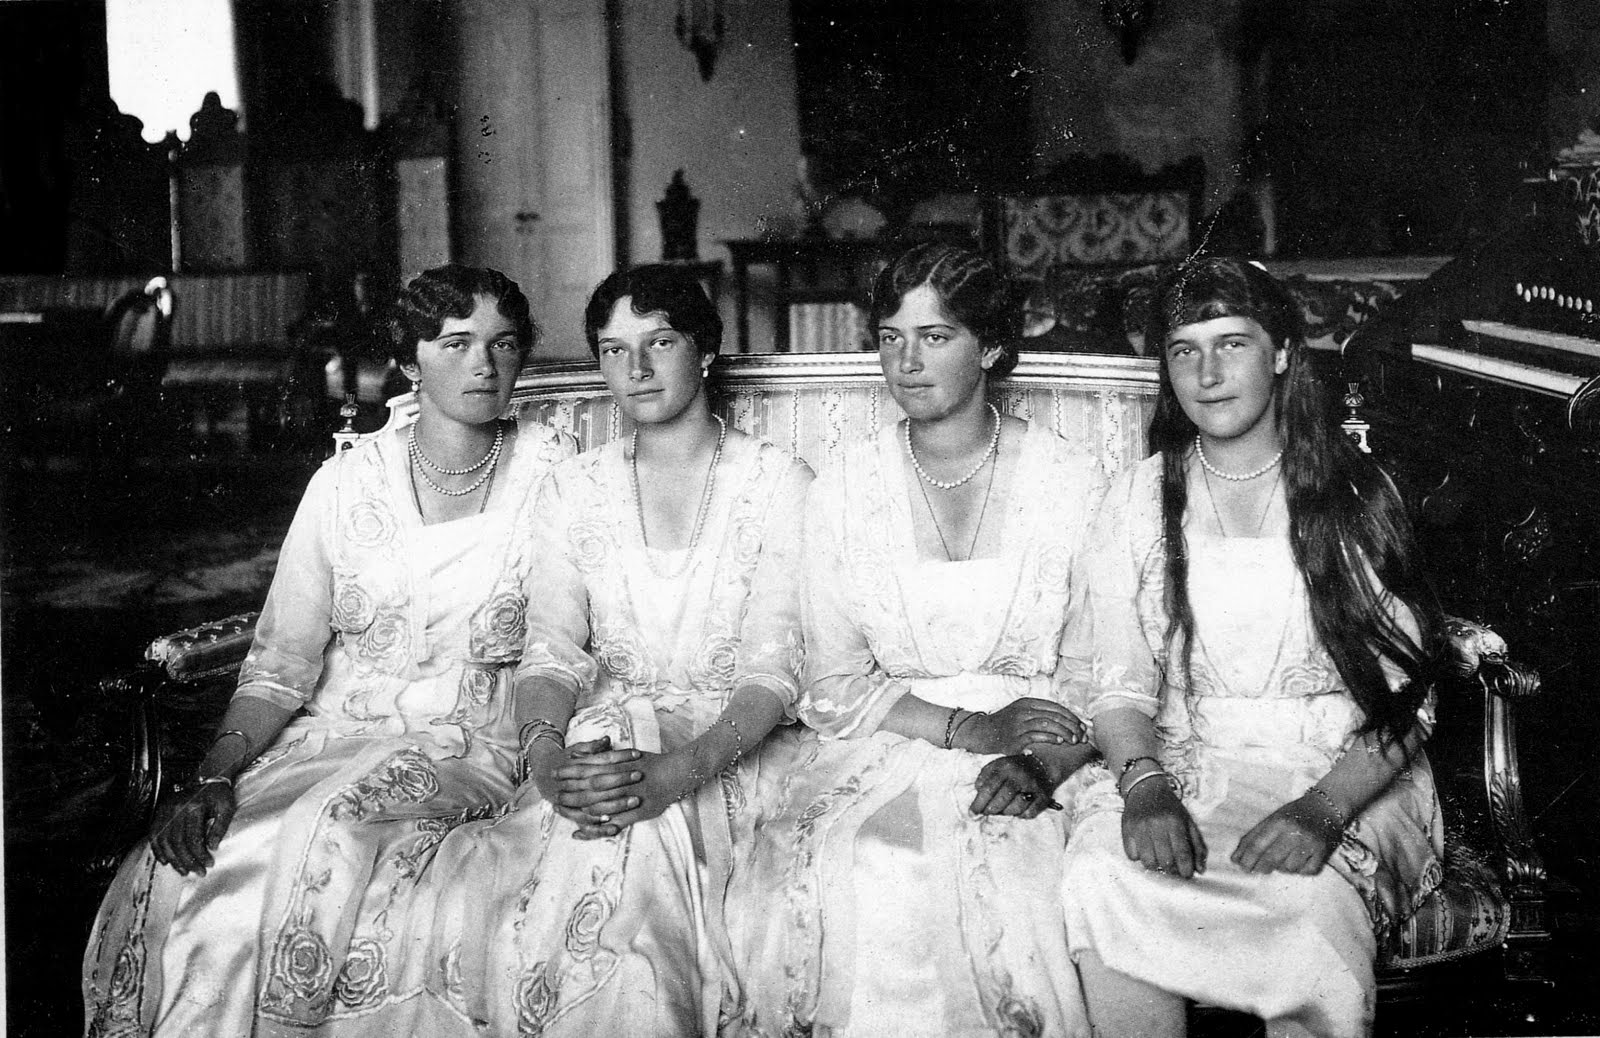 The four Russian princesses, Olga, Tatiana, Maria, and Anastasia, seated together.